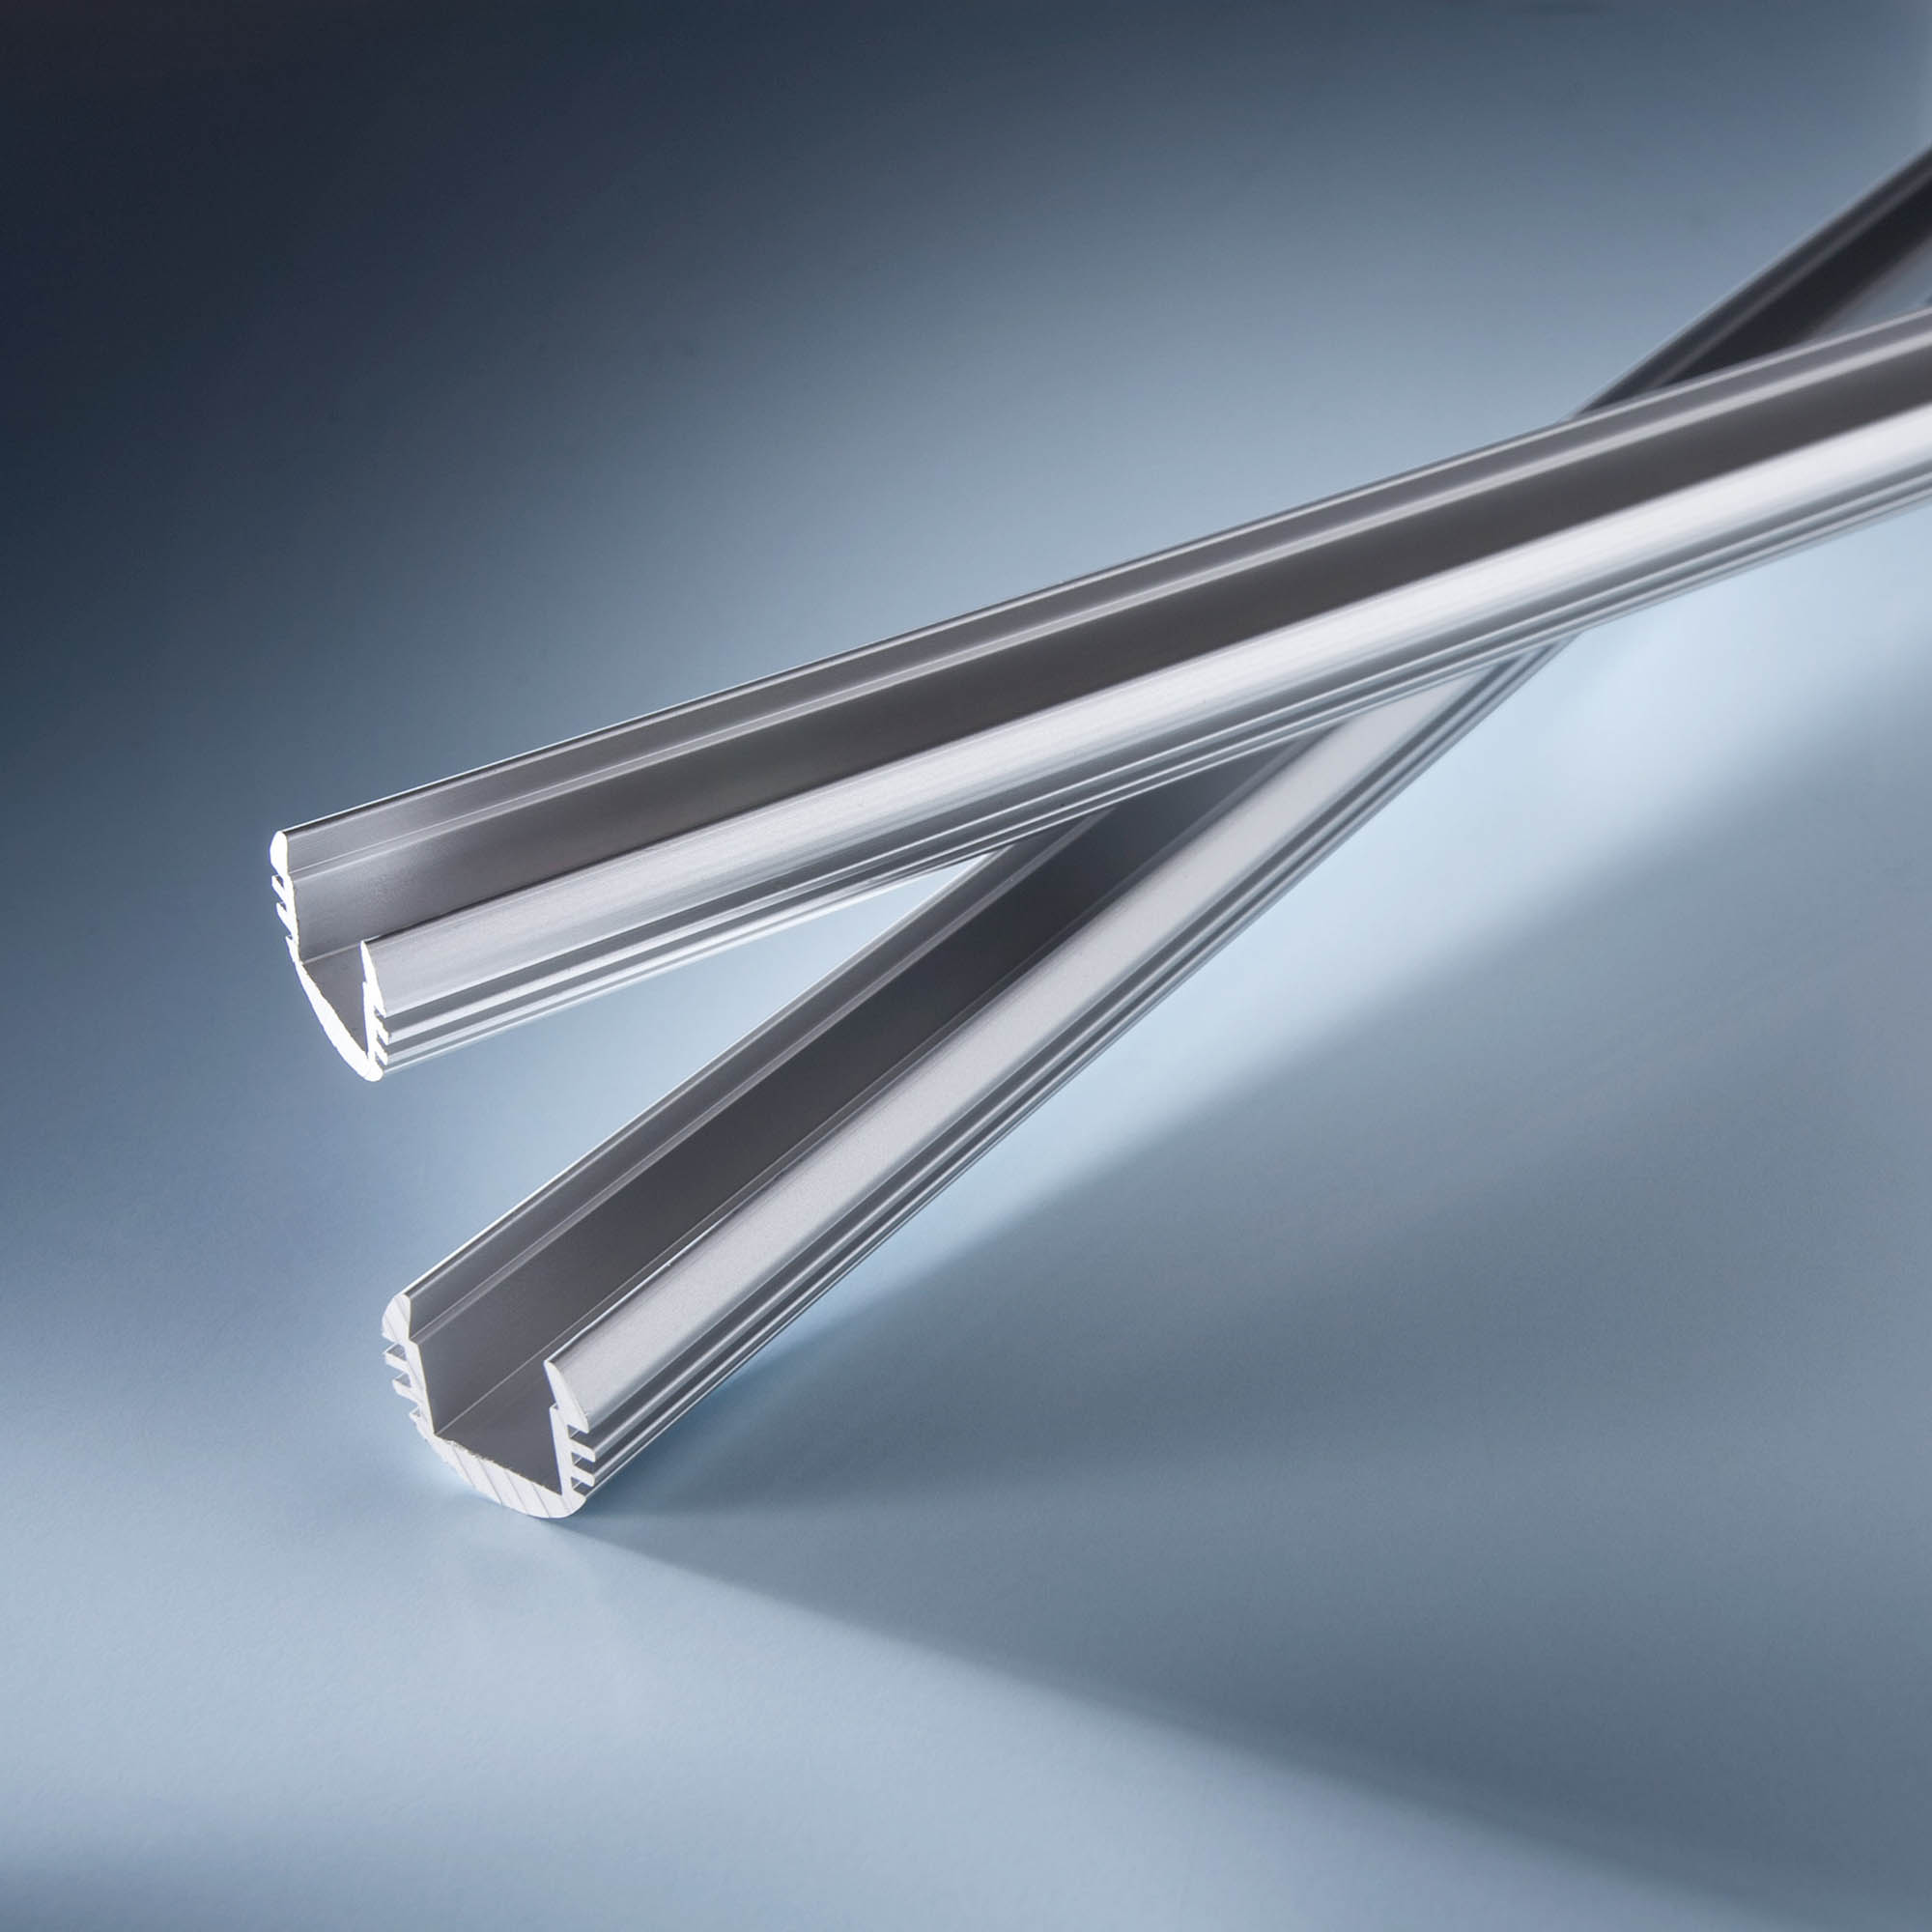 Perfil de aluminio Aluflex redondo para tiras LED flexibles 102cm